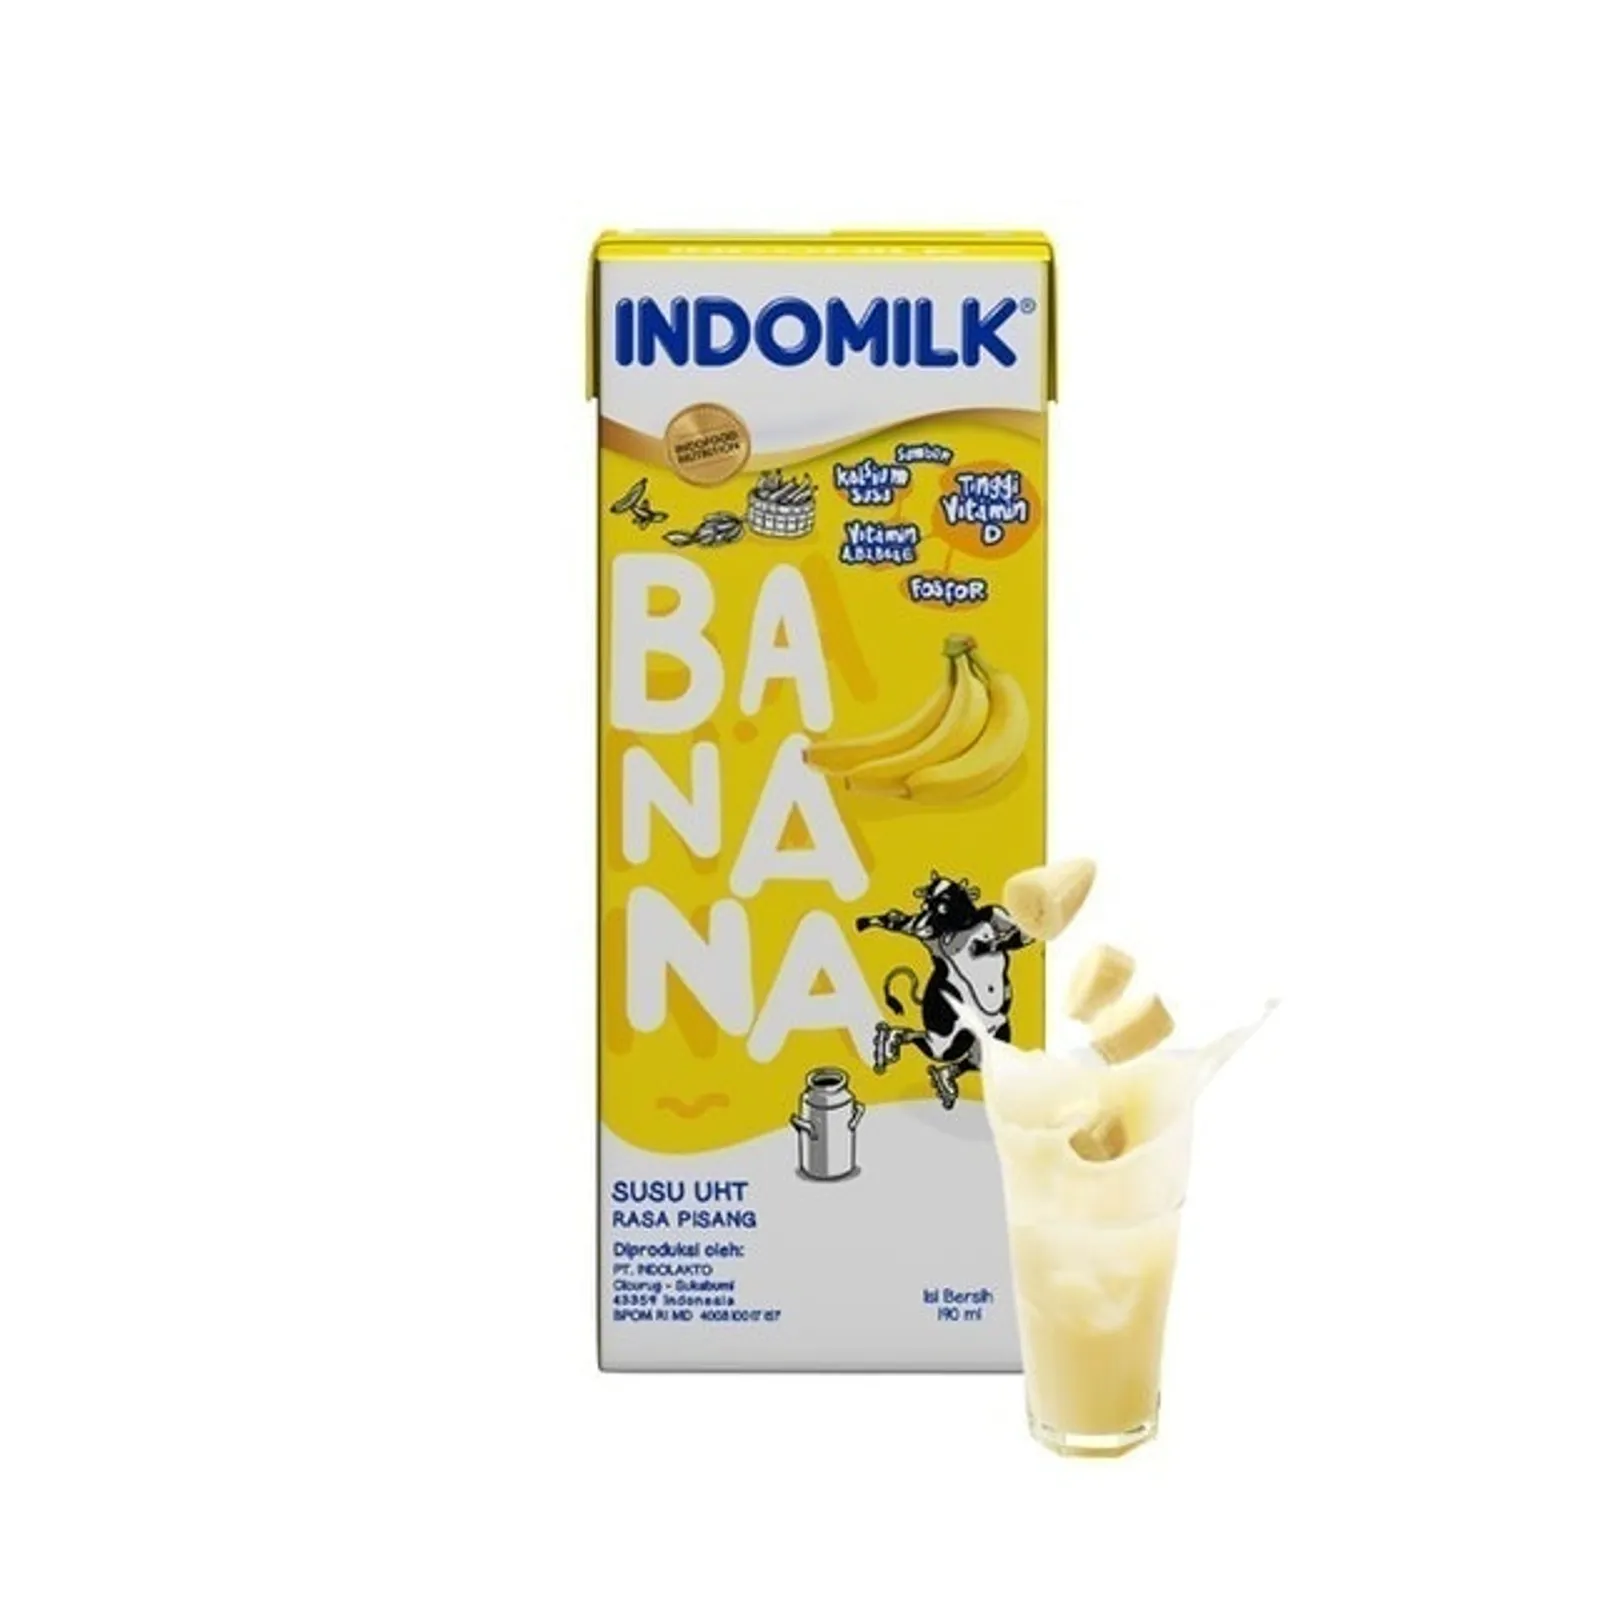 10 Aneka Merek Susu Pisang yang Dijual di Indonesia, Ada 'Binggrae'!